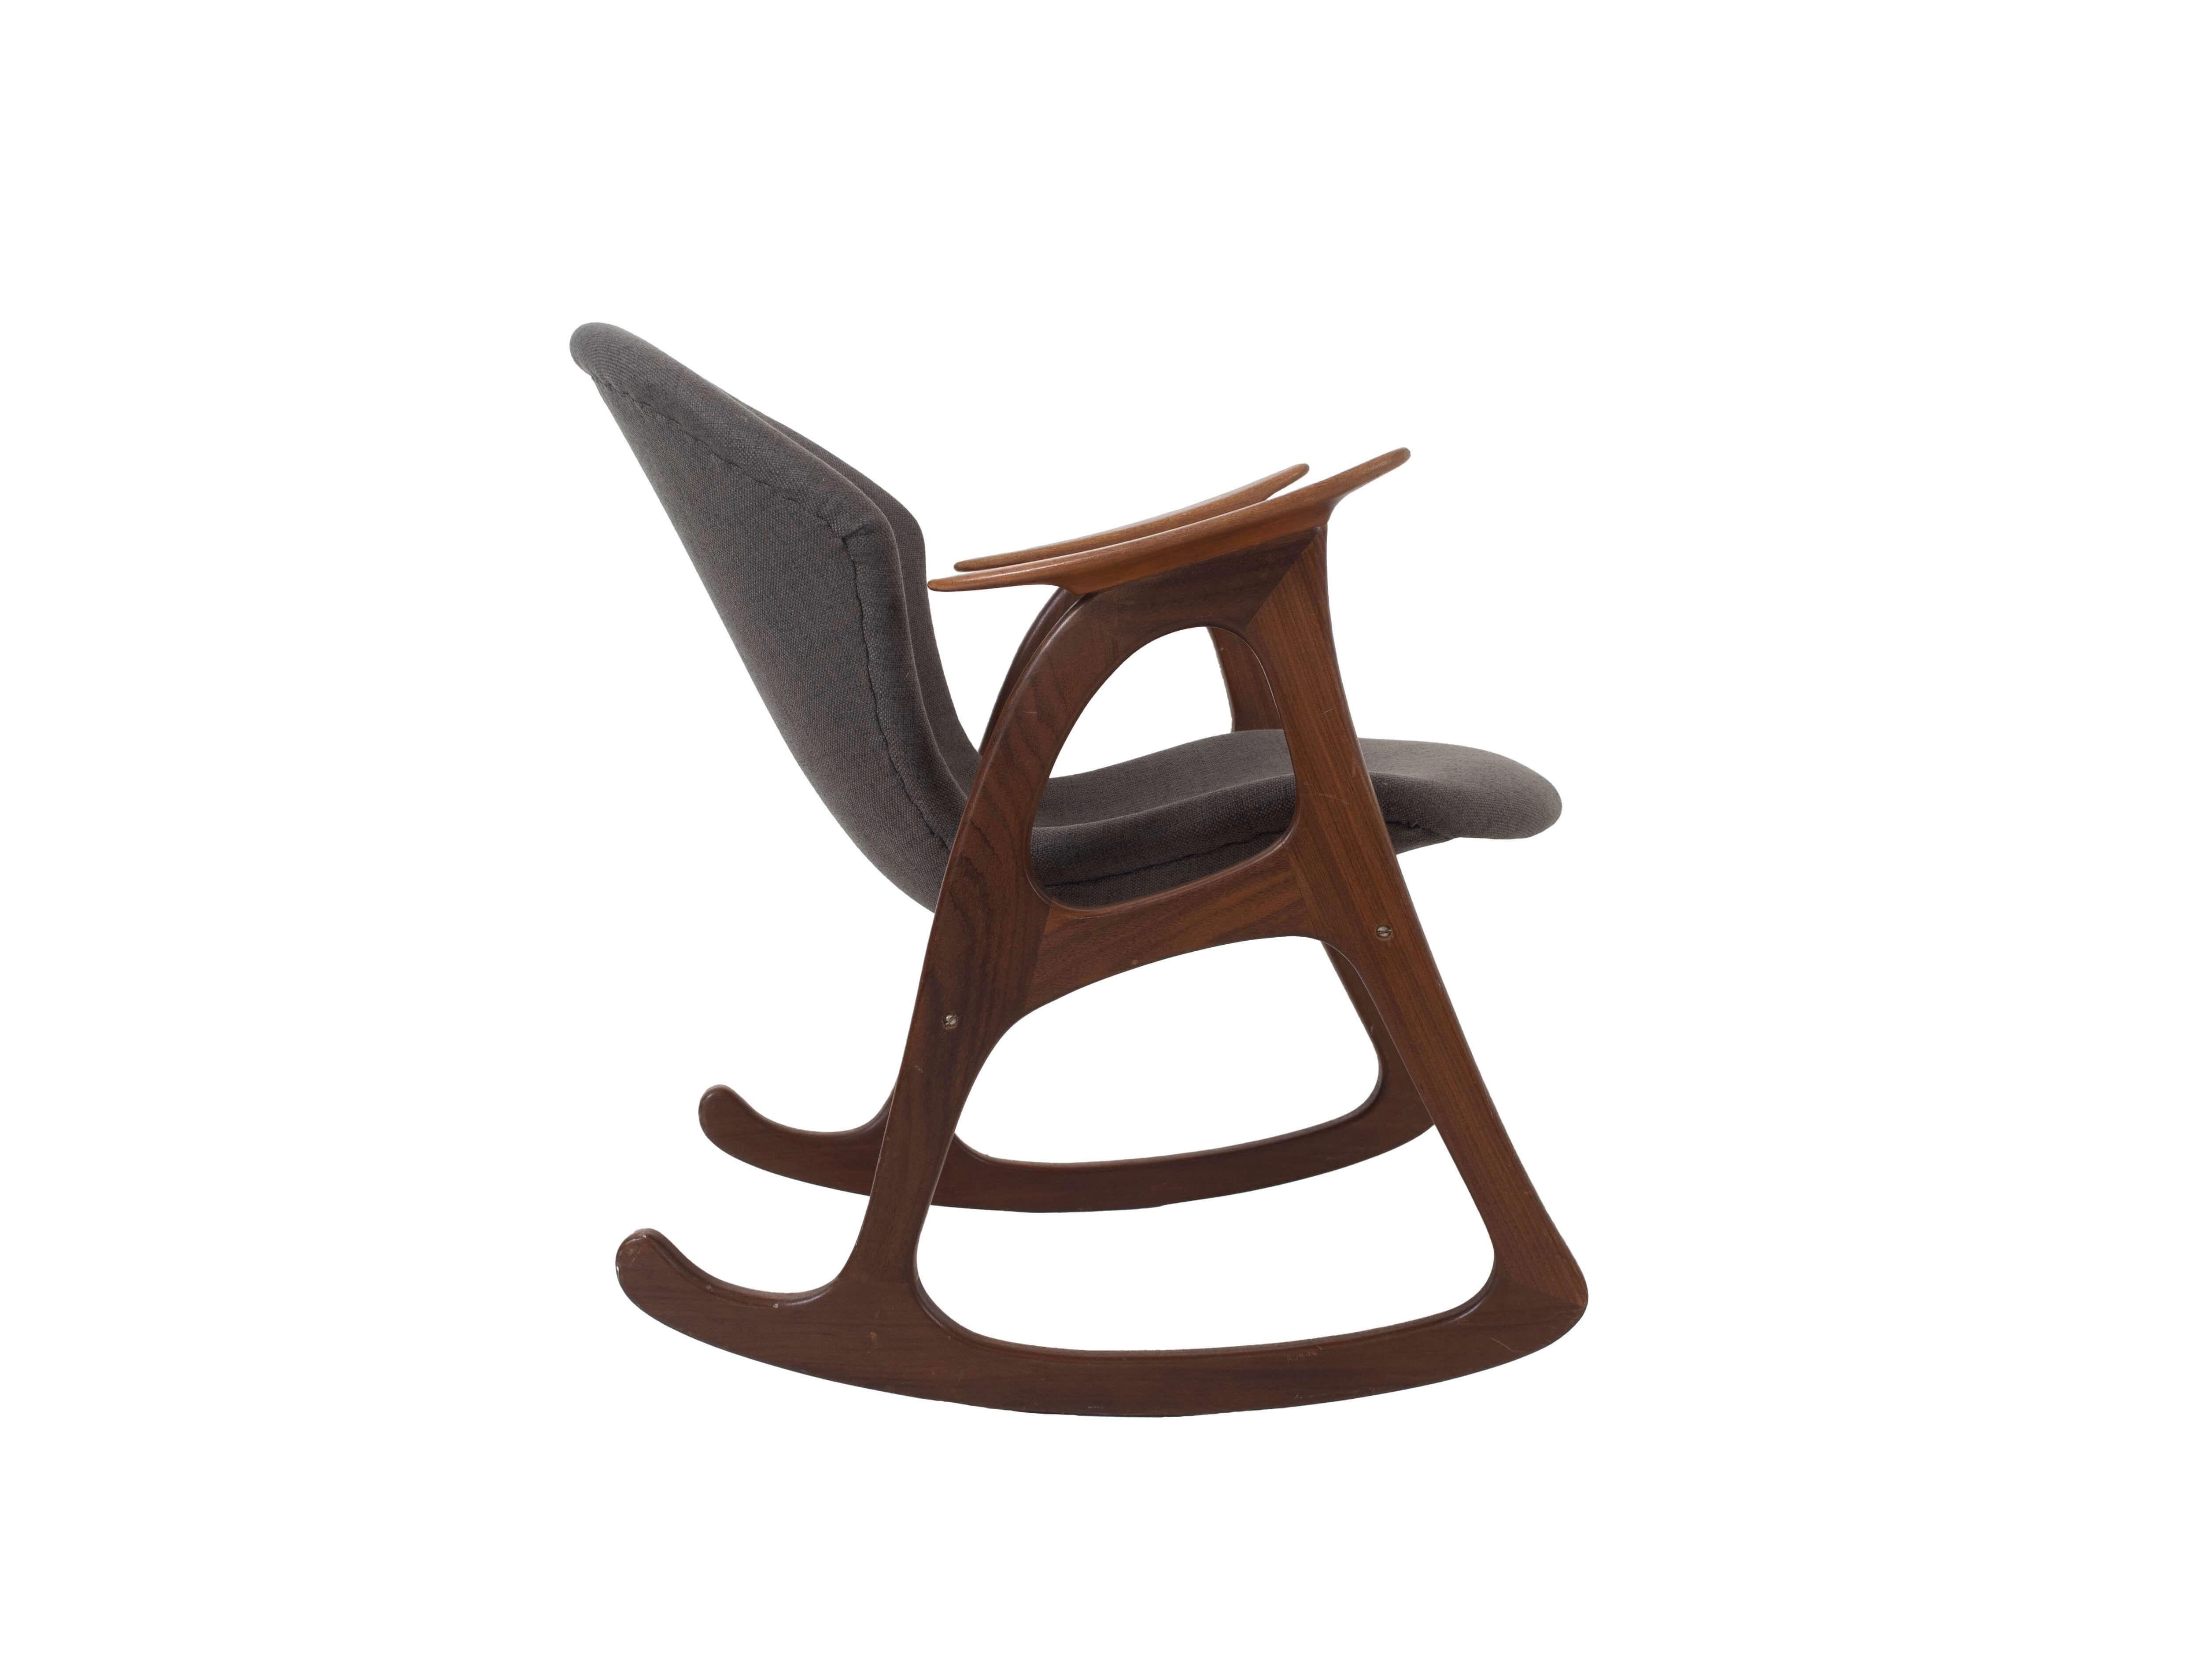 Chaise à bascule vintage danoise très décorative par Aage Christiansen pour Erhardsen & Andersen, Danemark années 1960. Cette chaise est fabriquée en bois de teck, qui contraste joliment avec le tissu. Il présente les caractéristiques typiques du